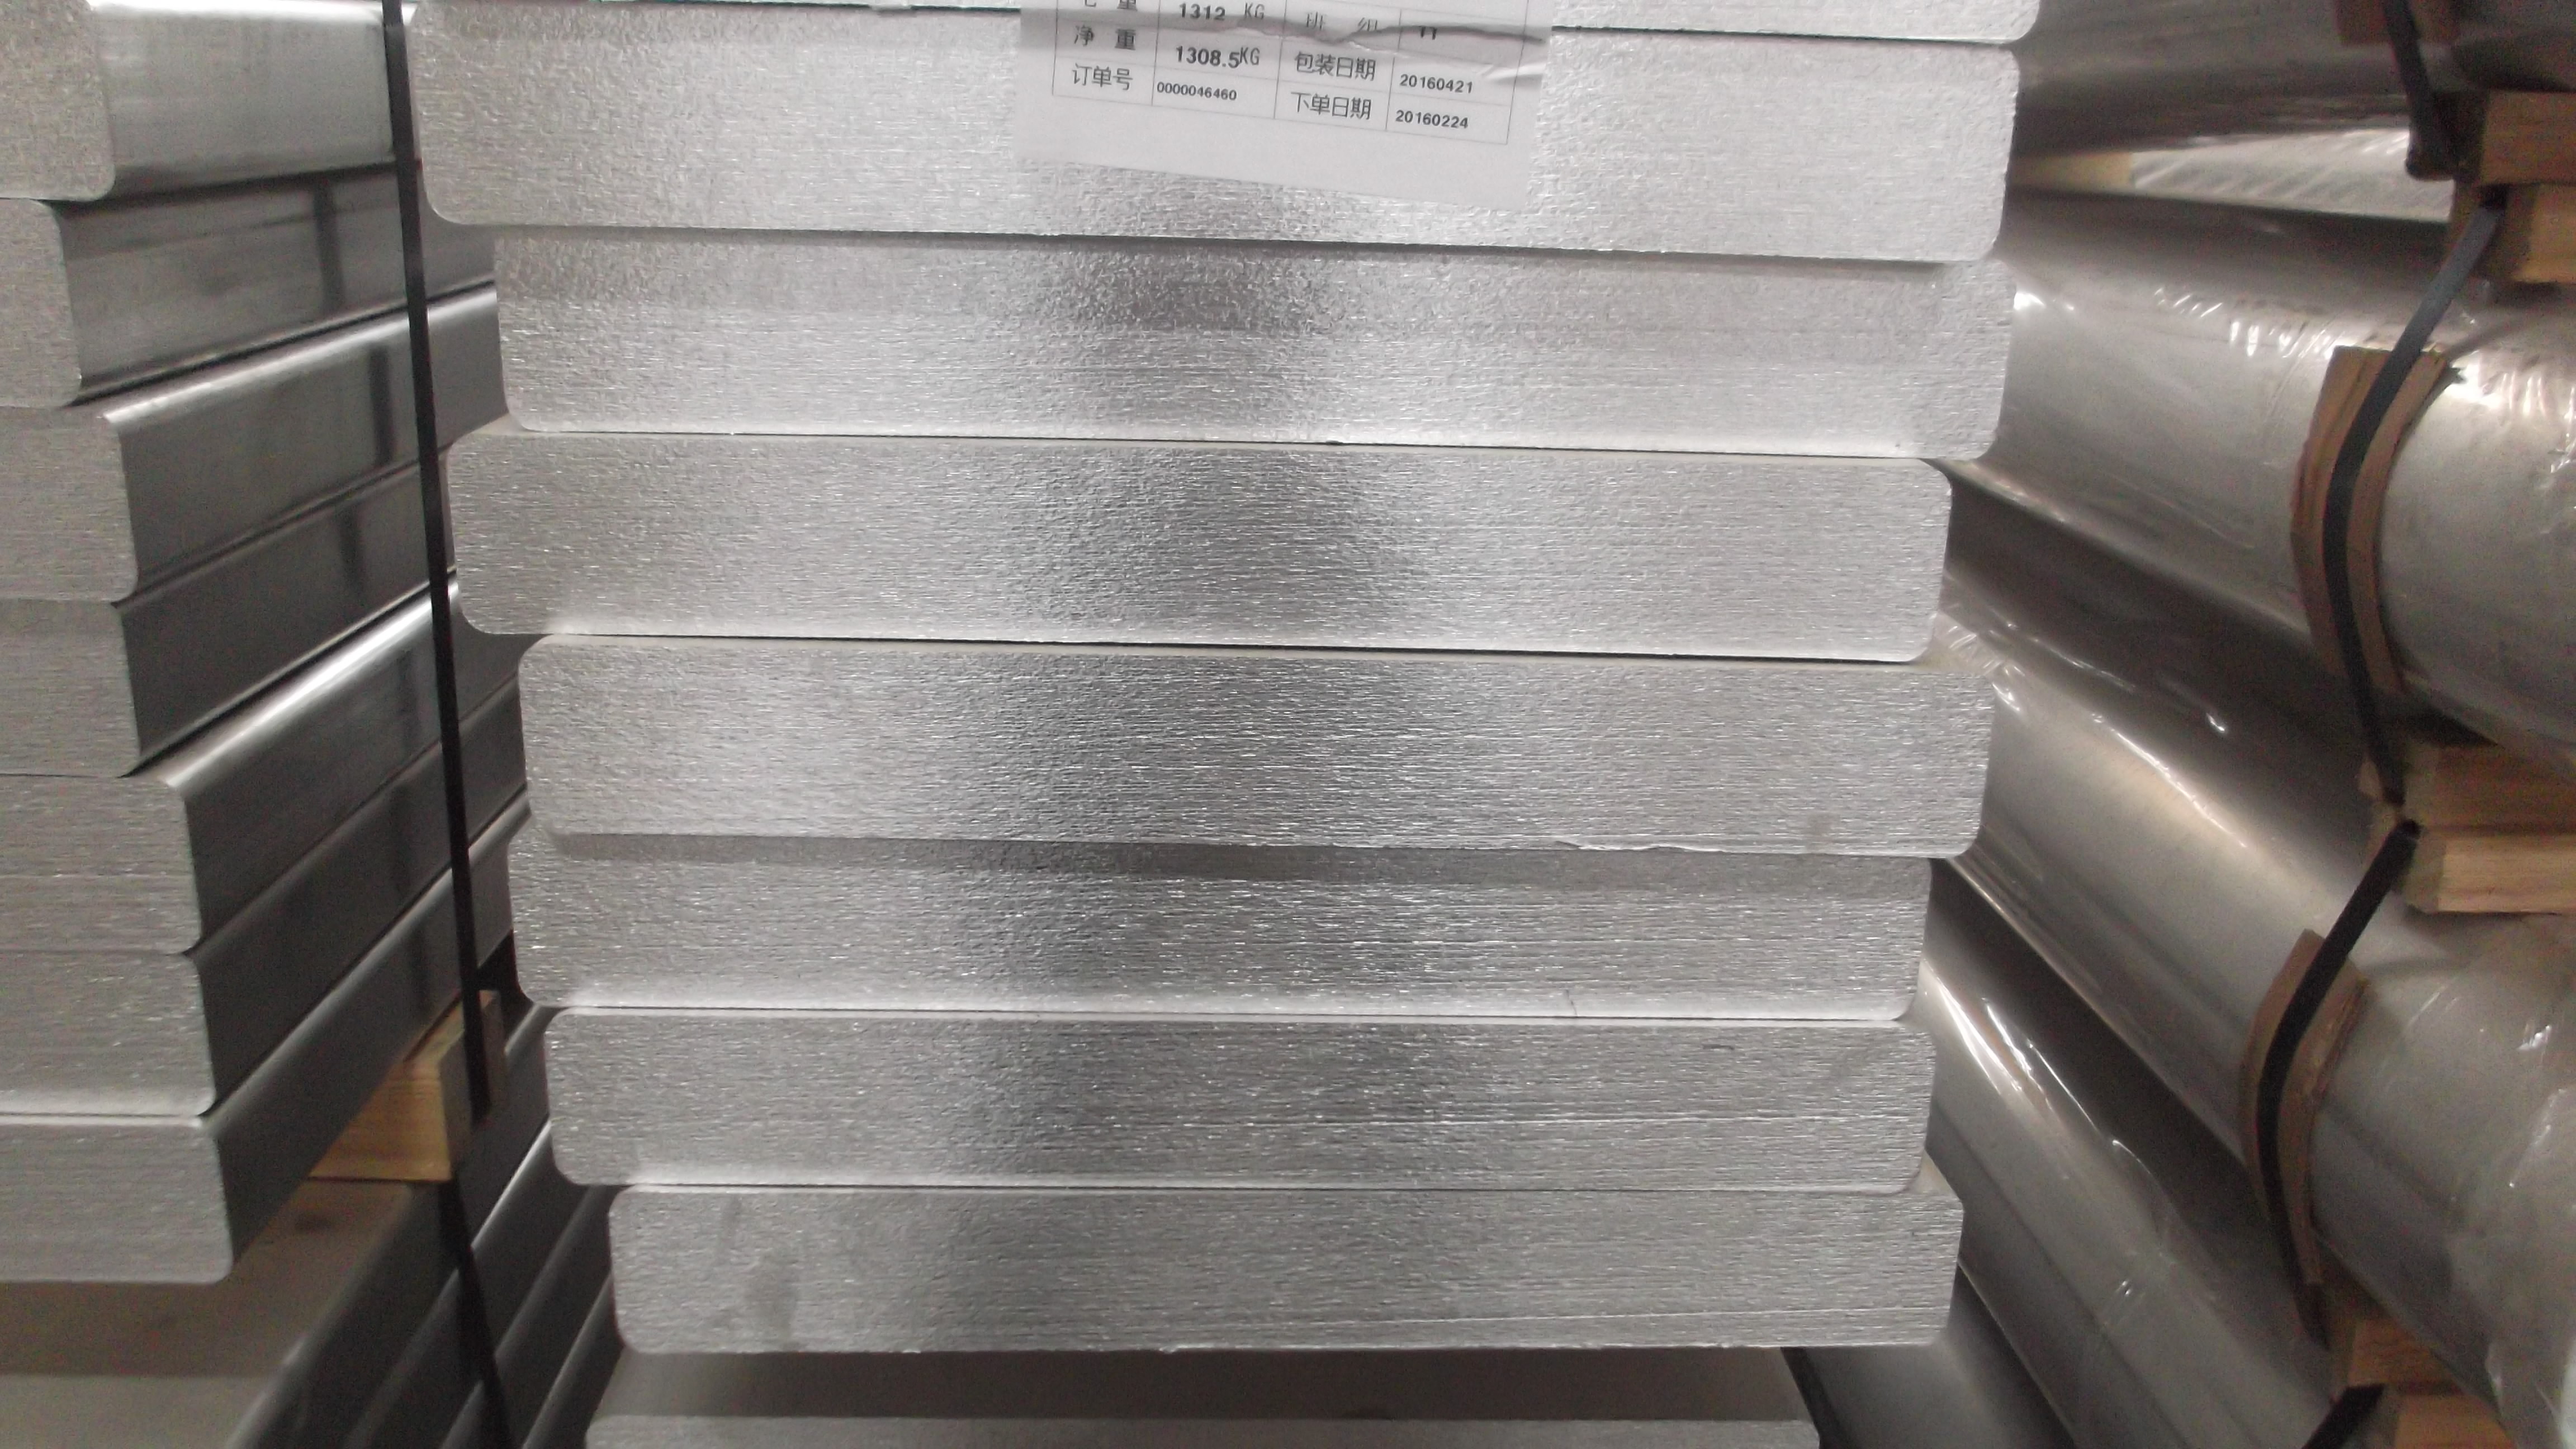 2198 aluminum-lithium alloy block